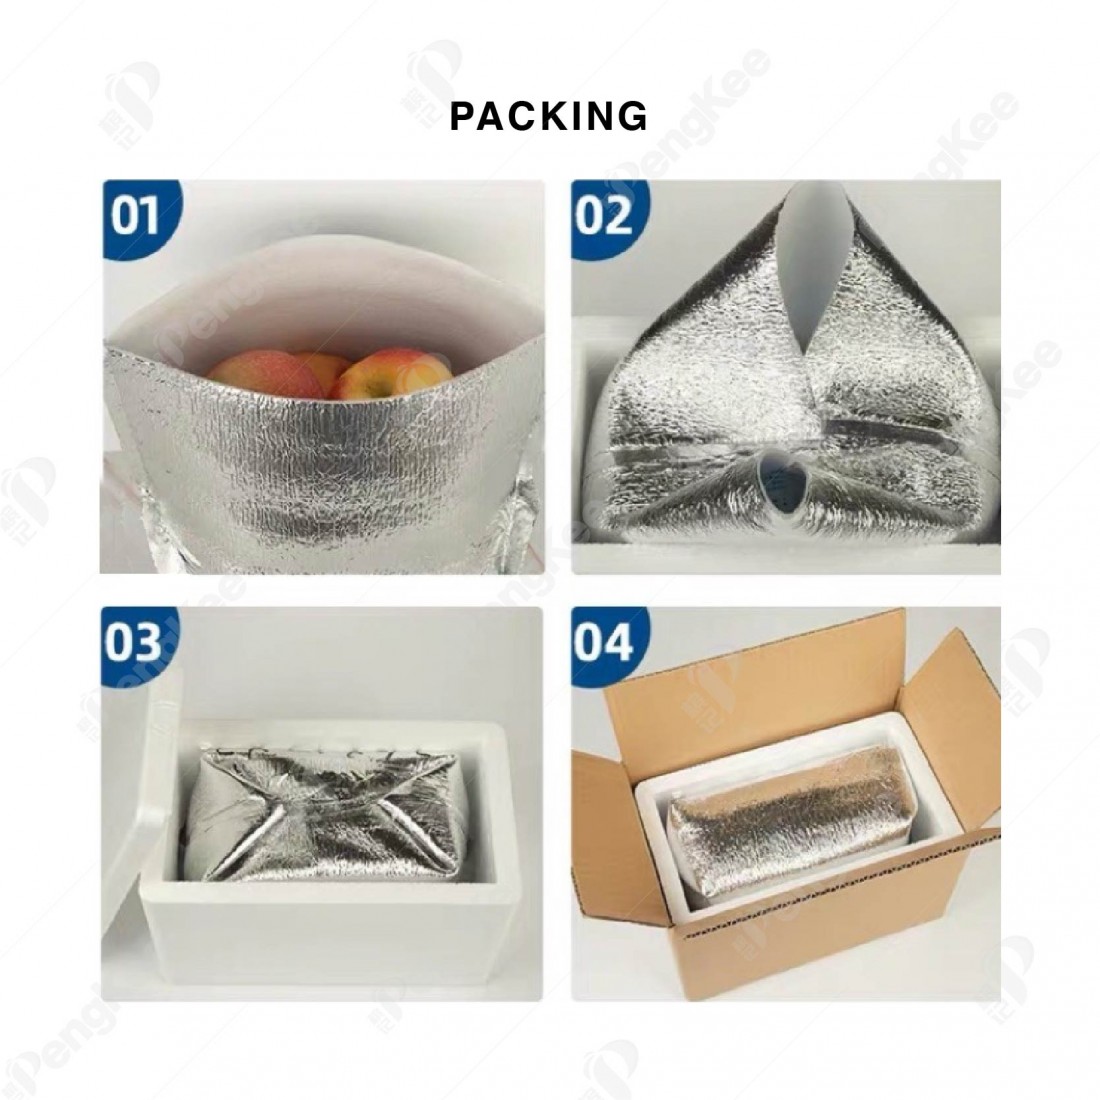 ALUMINUM FOIL PEARL COTTON INSULATION BAG (L24 * W24 * H32CM +3MM) 铝箱珍珠保温袋 (20'S)